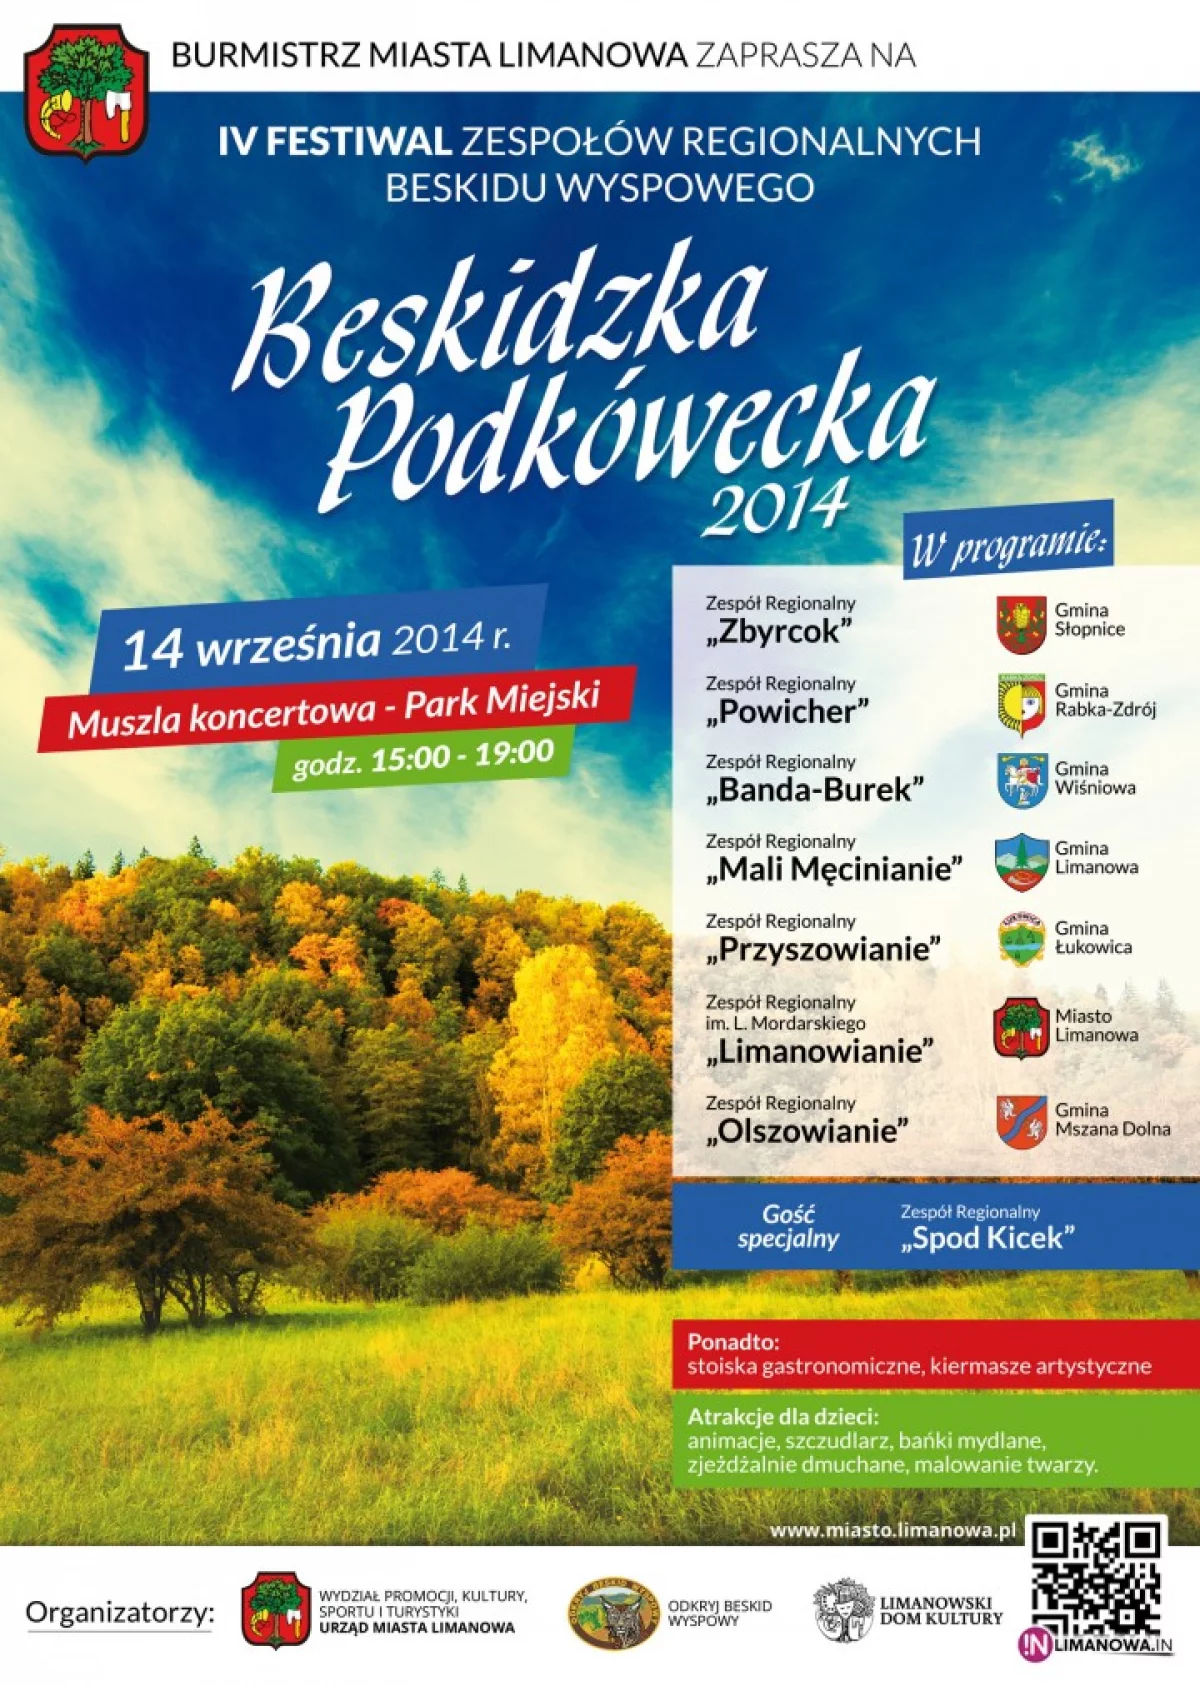 Oglądaj 'Beskidzką Podkóweckę' on-line